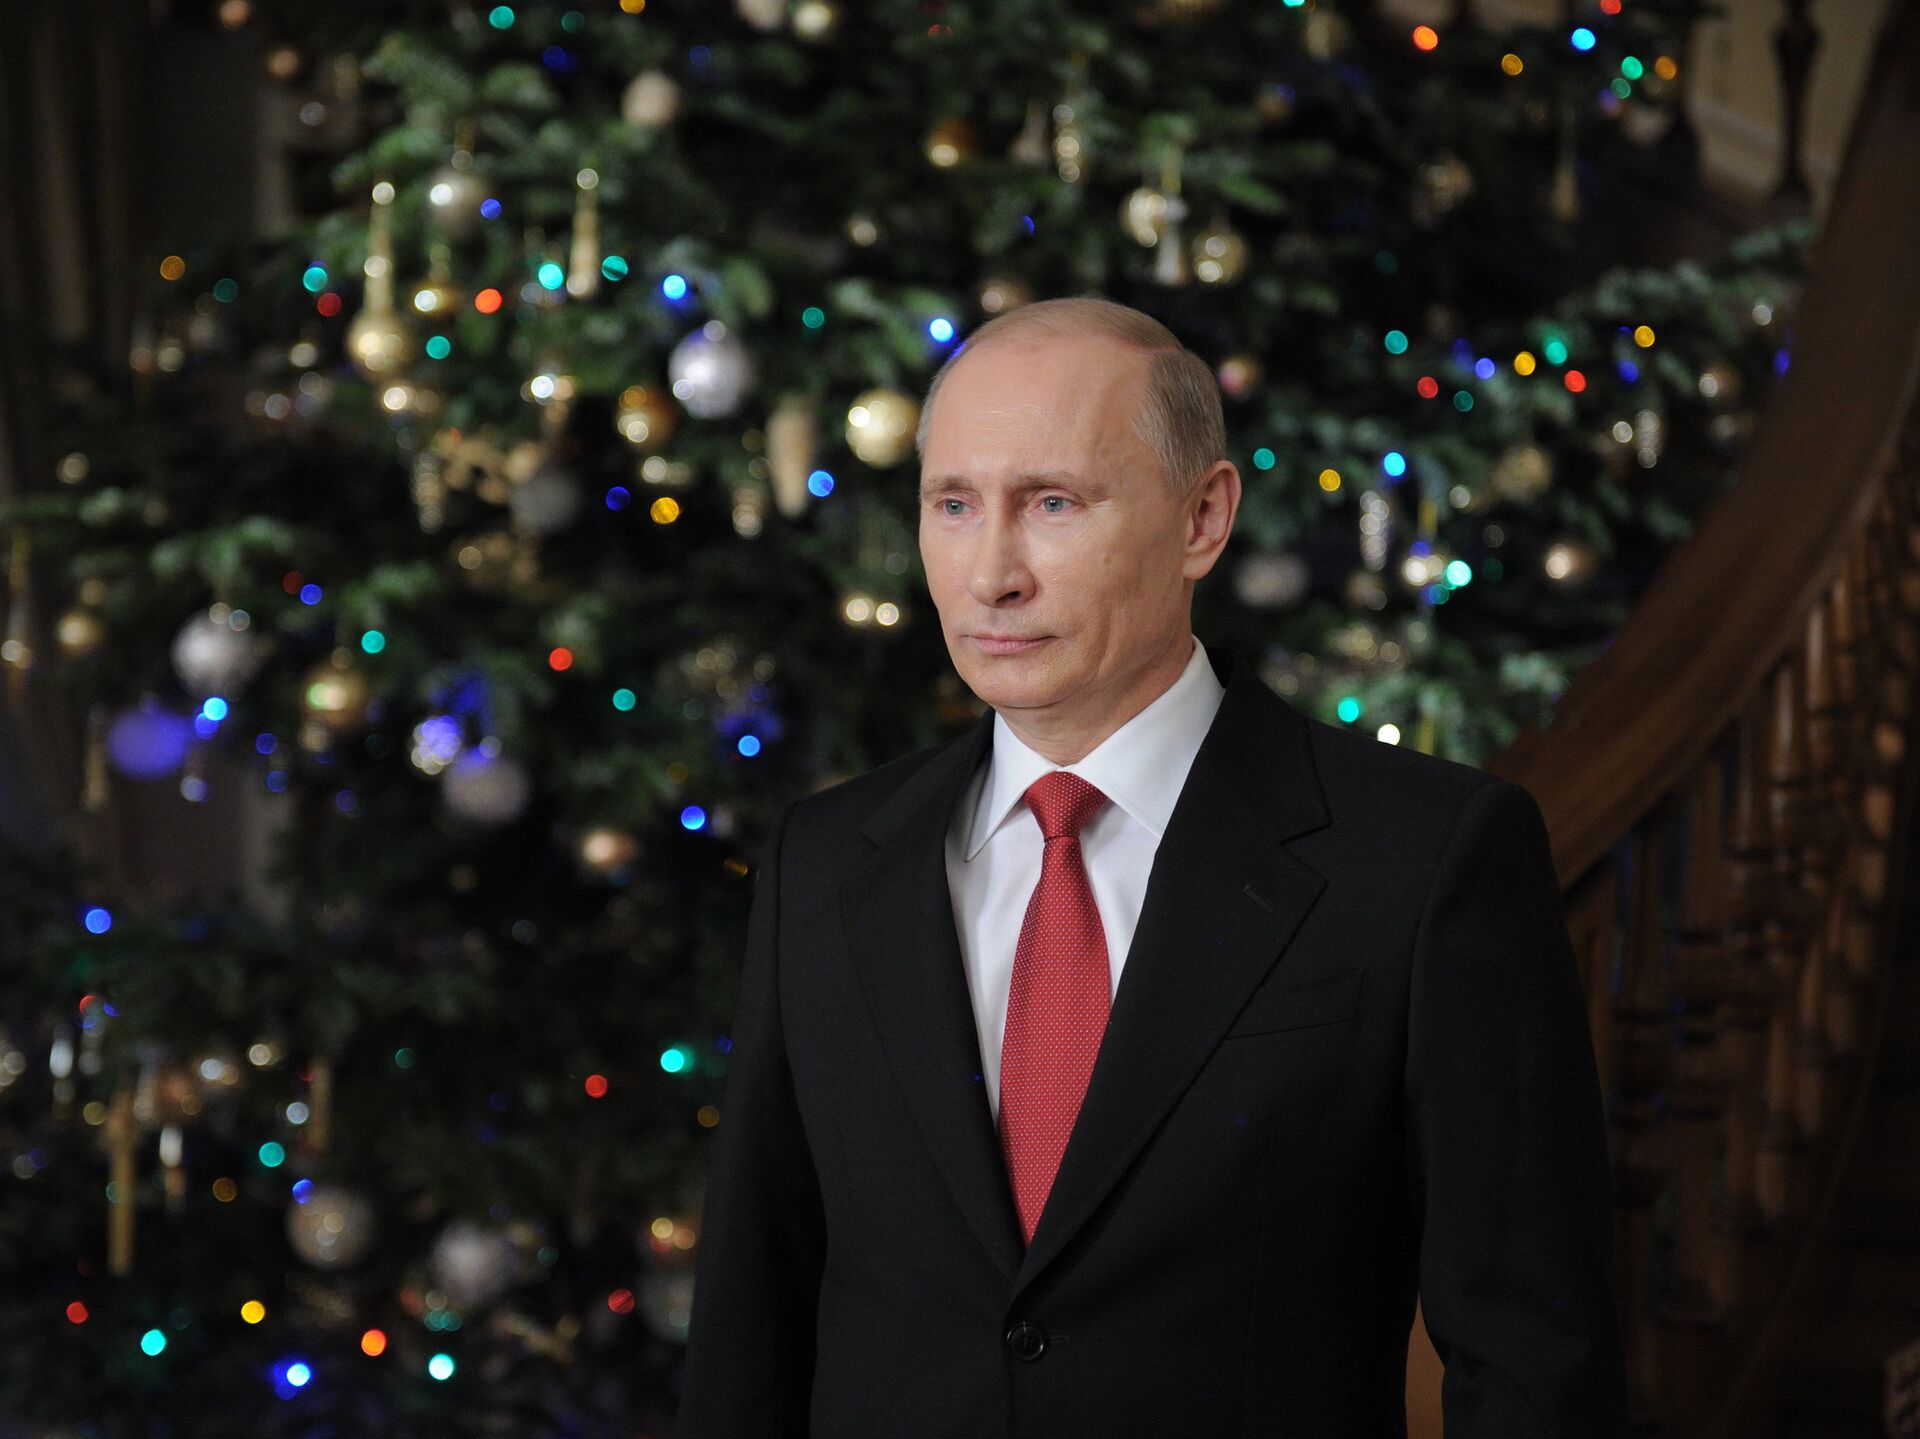 Новогоднее обращение Владимира Путина — 2022